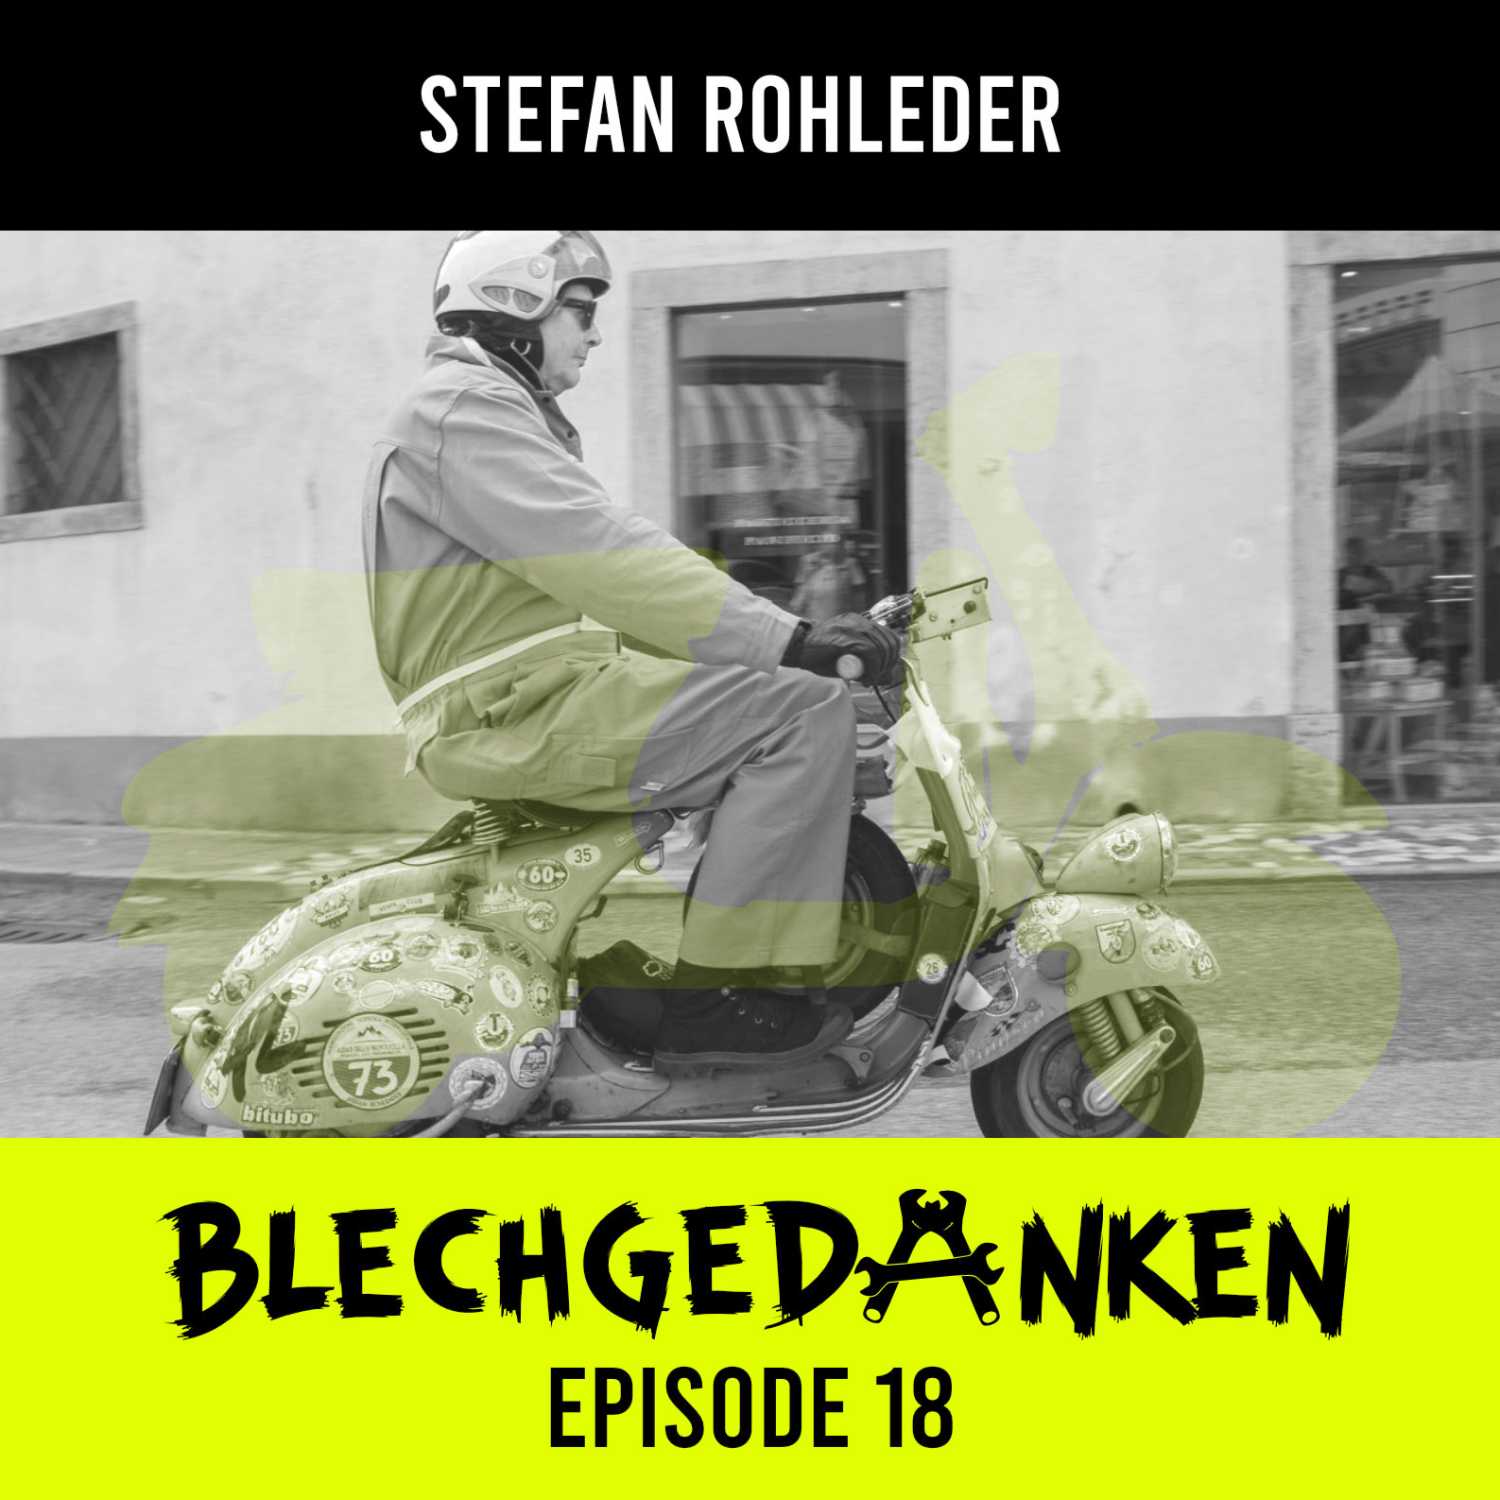 Blechgedanken Episode 18 - Stefan Rohleder - Mit altem Blech durch die Eifel und durch Bella Italia!​